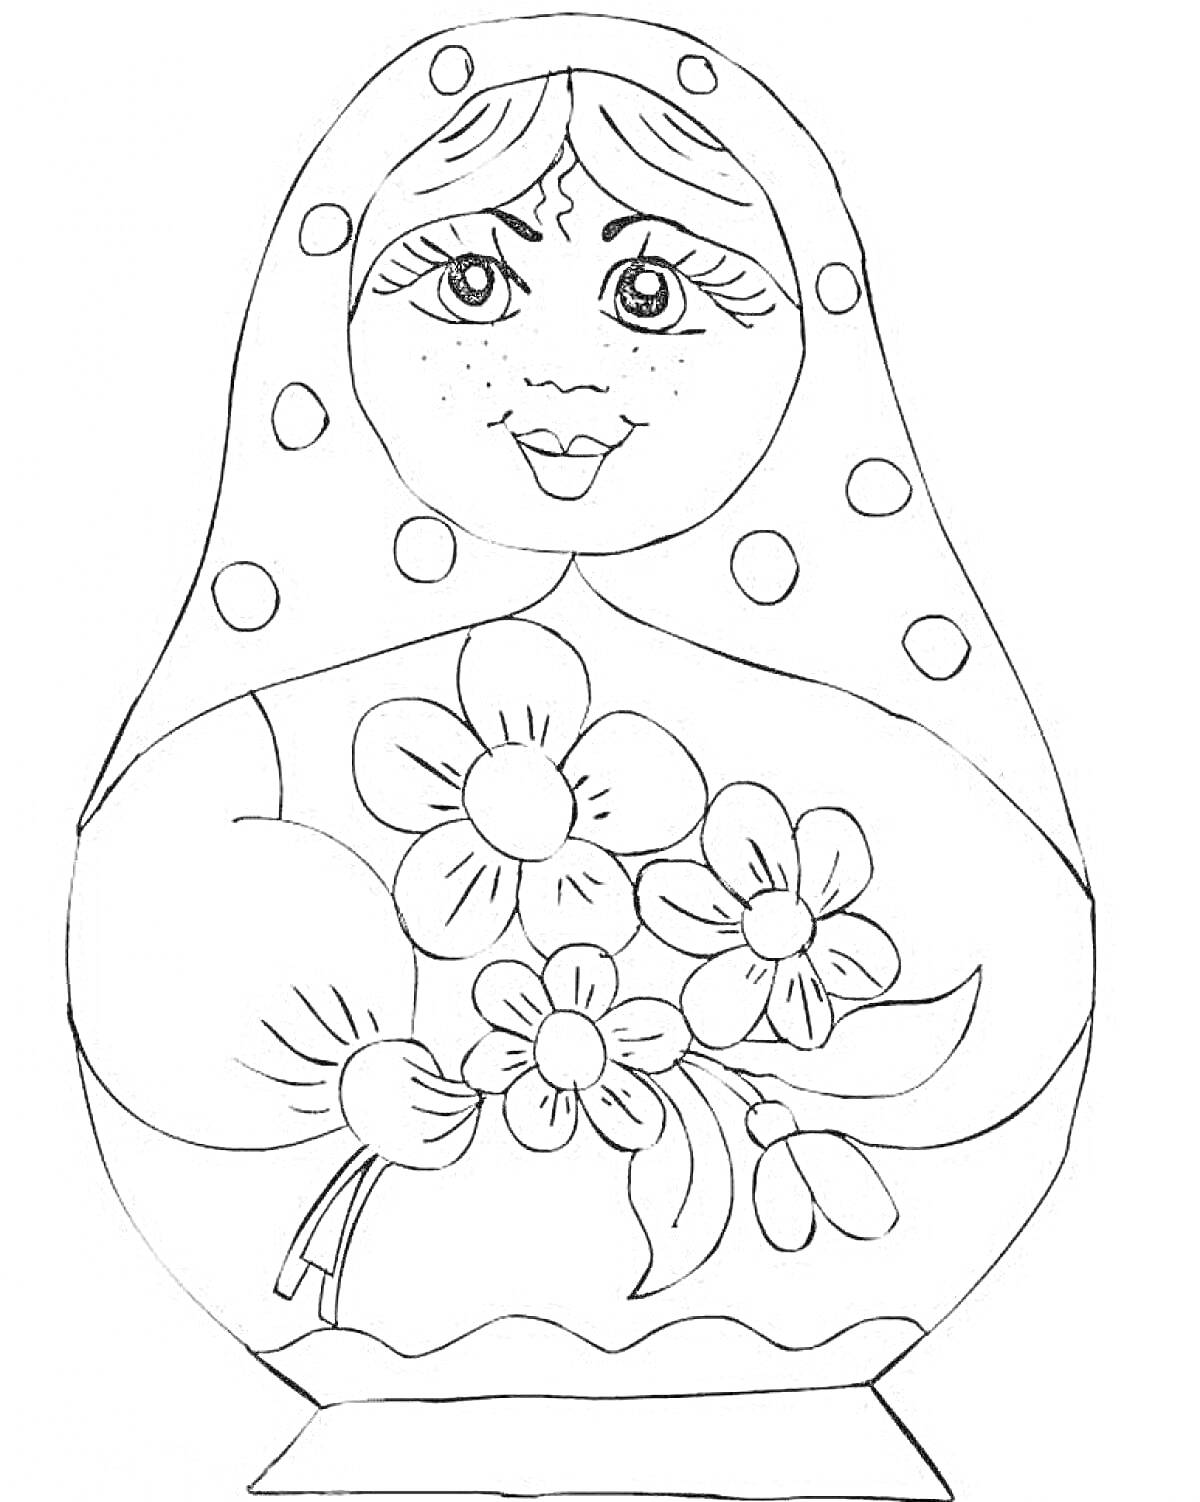 Раскраска Матрешка с букетом цветов и точками на платке